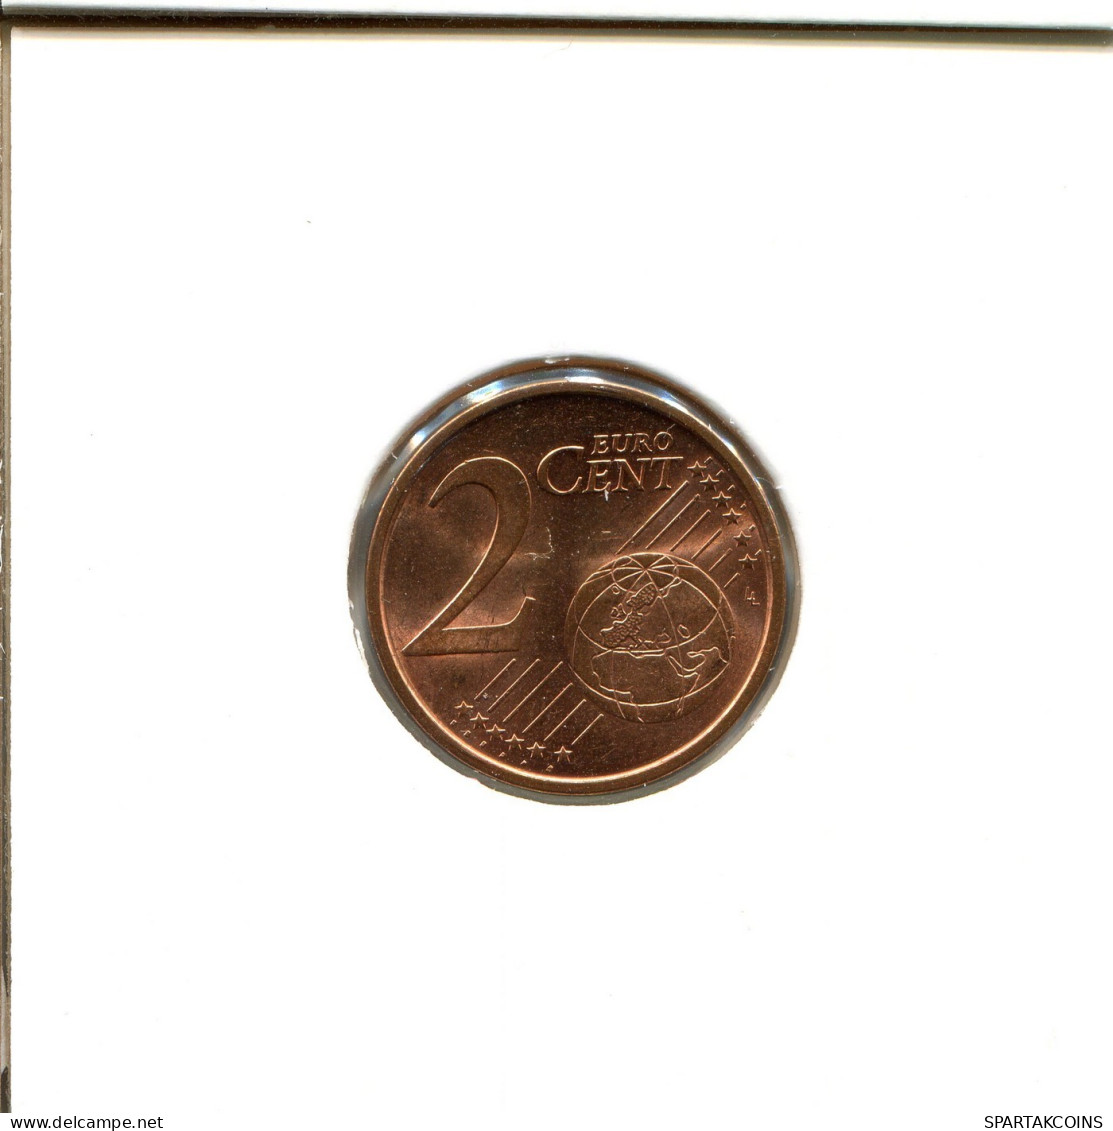 2 EURO CENTS 2012 ESPAÑA Moneda SPAIN #EU353.E.A - España